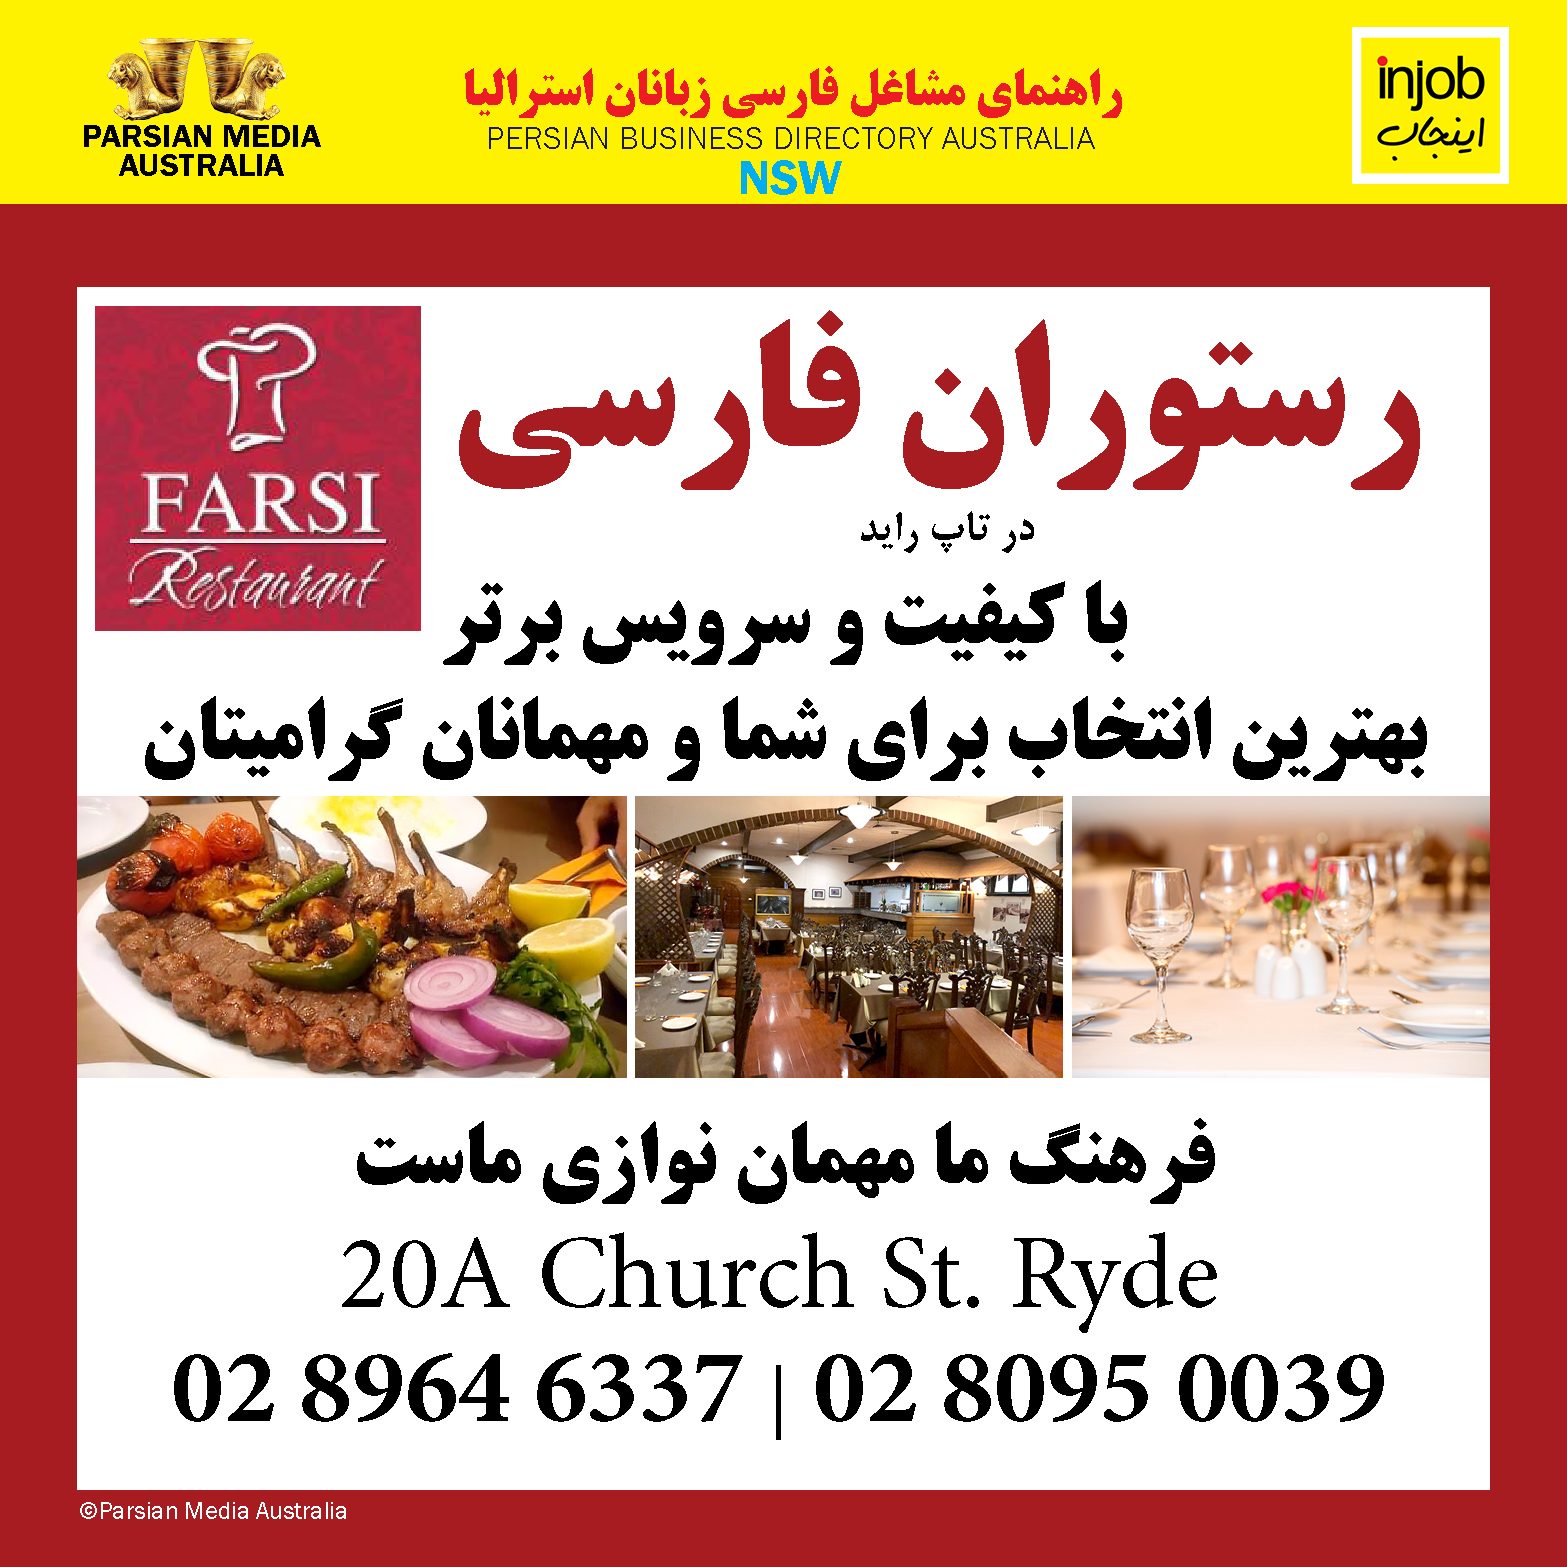 Farsi-Restaurant-Injob-2021-2022-icon.jpg